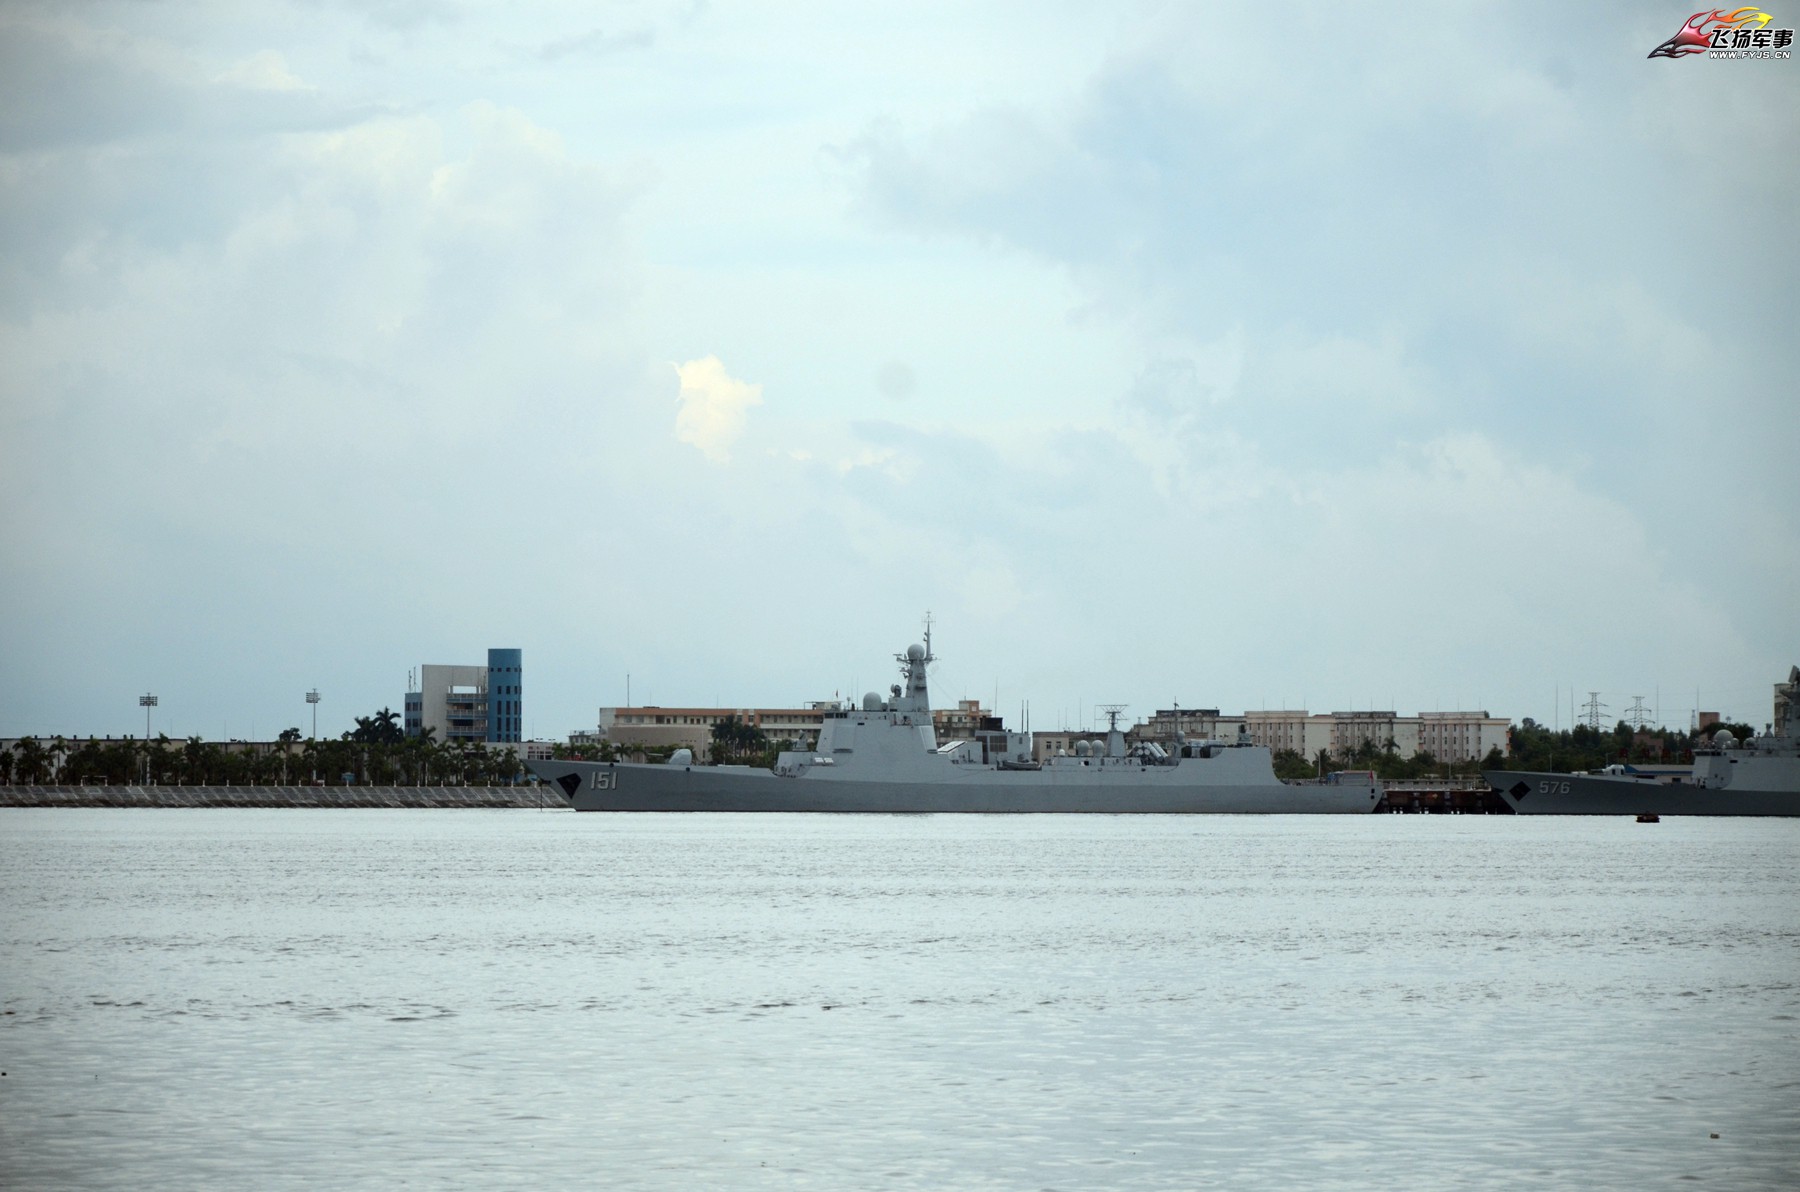 俄媒:中国海军是美在太平洋唯一劲敌 潜力惊人